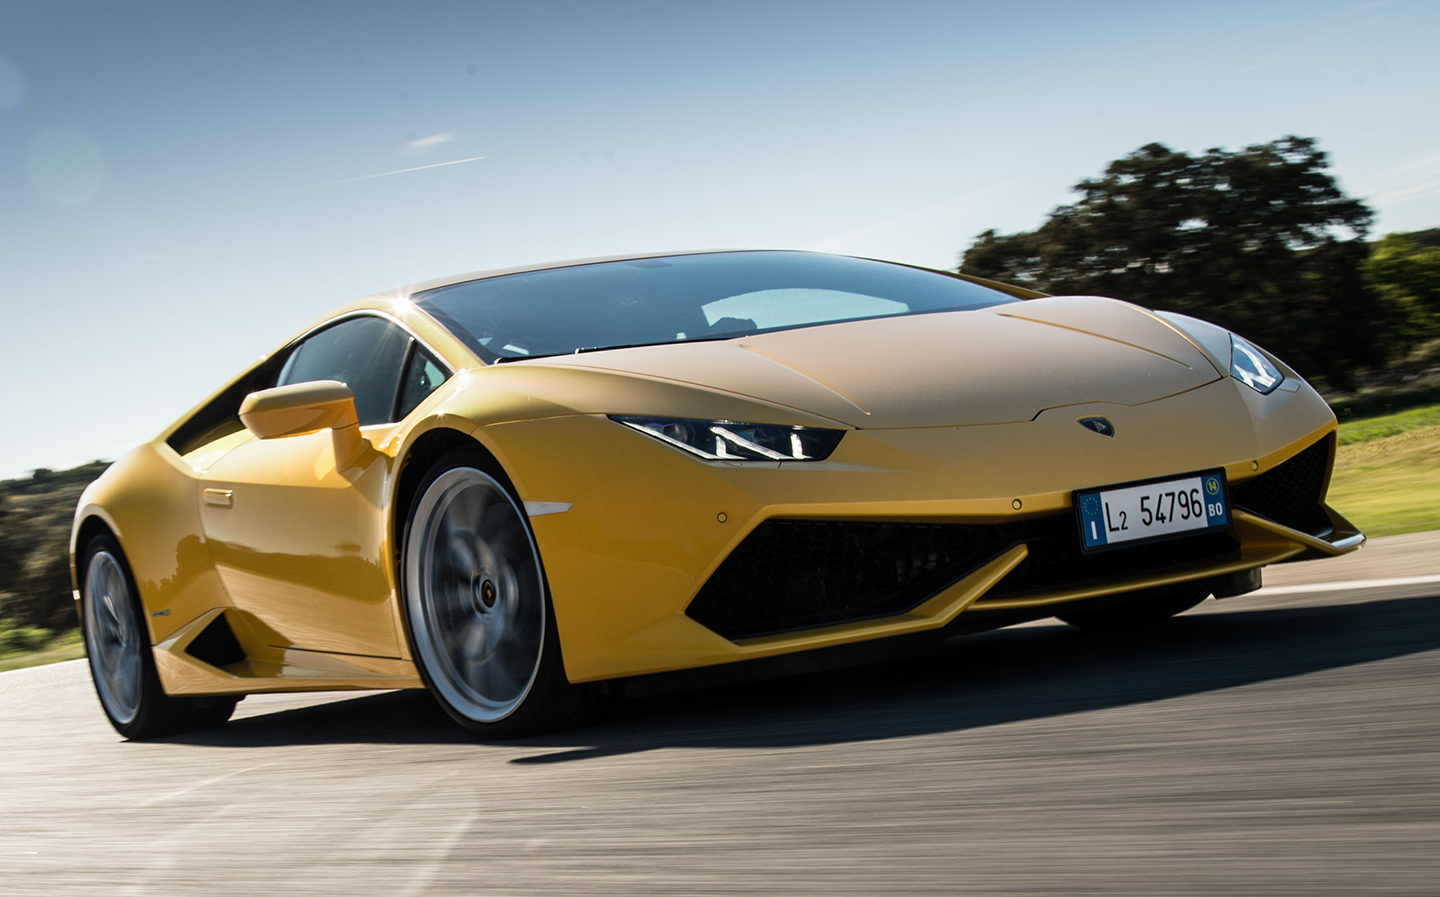 Lamborghini-driving tourist in Dubai amasses nearly £36,000 in speeding fines